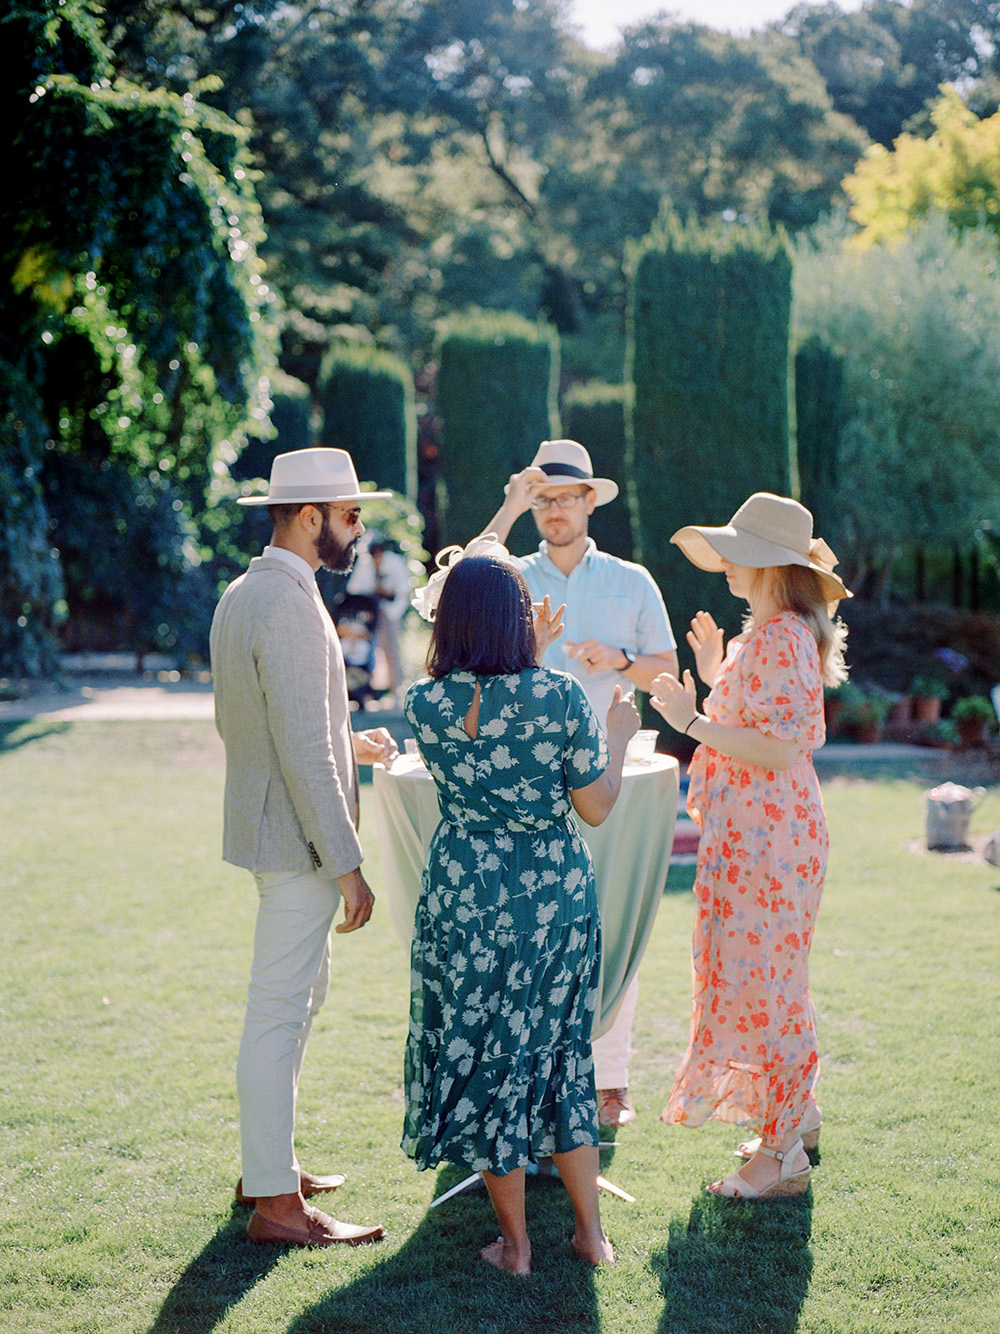 Spring fashion for English tea party garden wedding at Filoli Historic House & Garden 